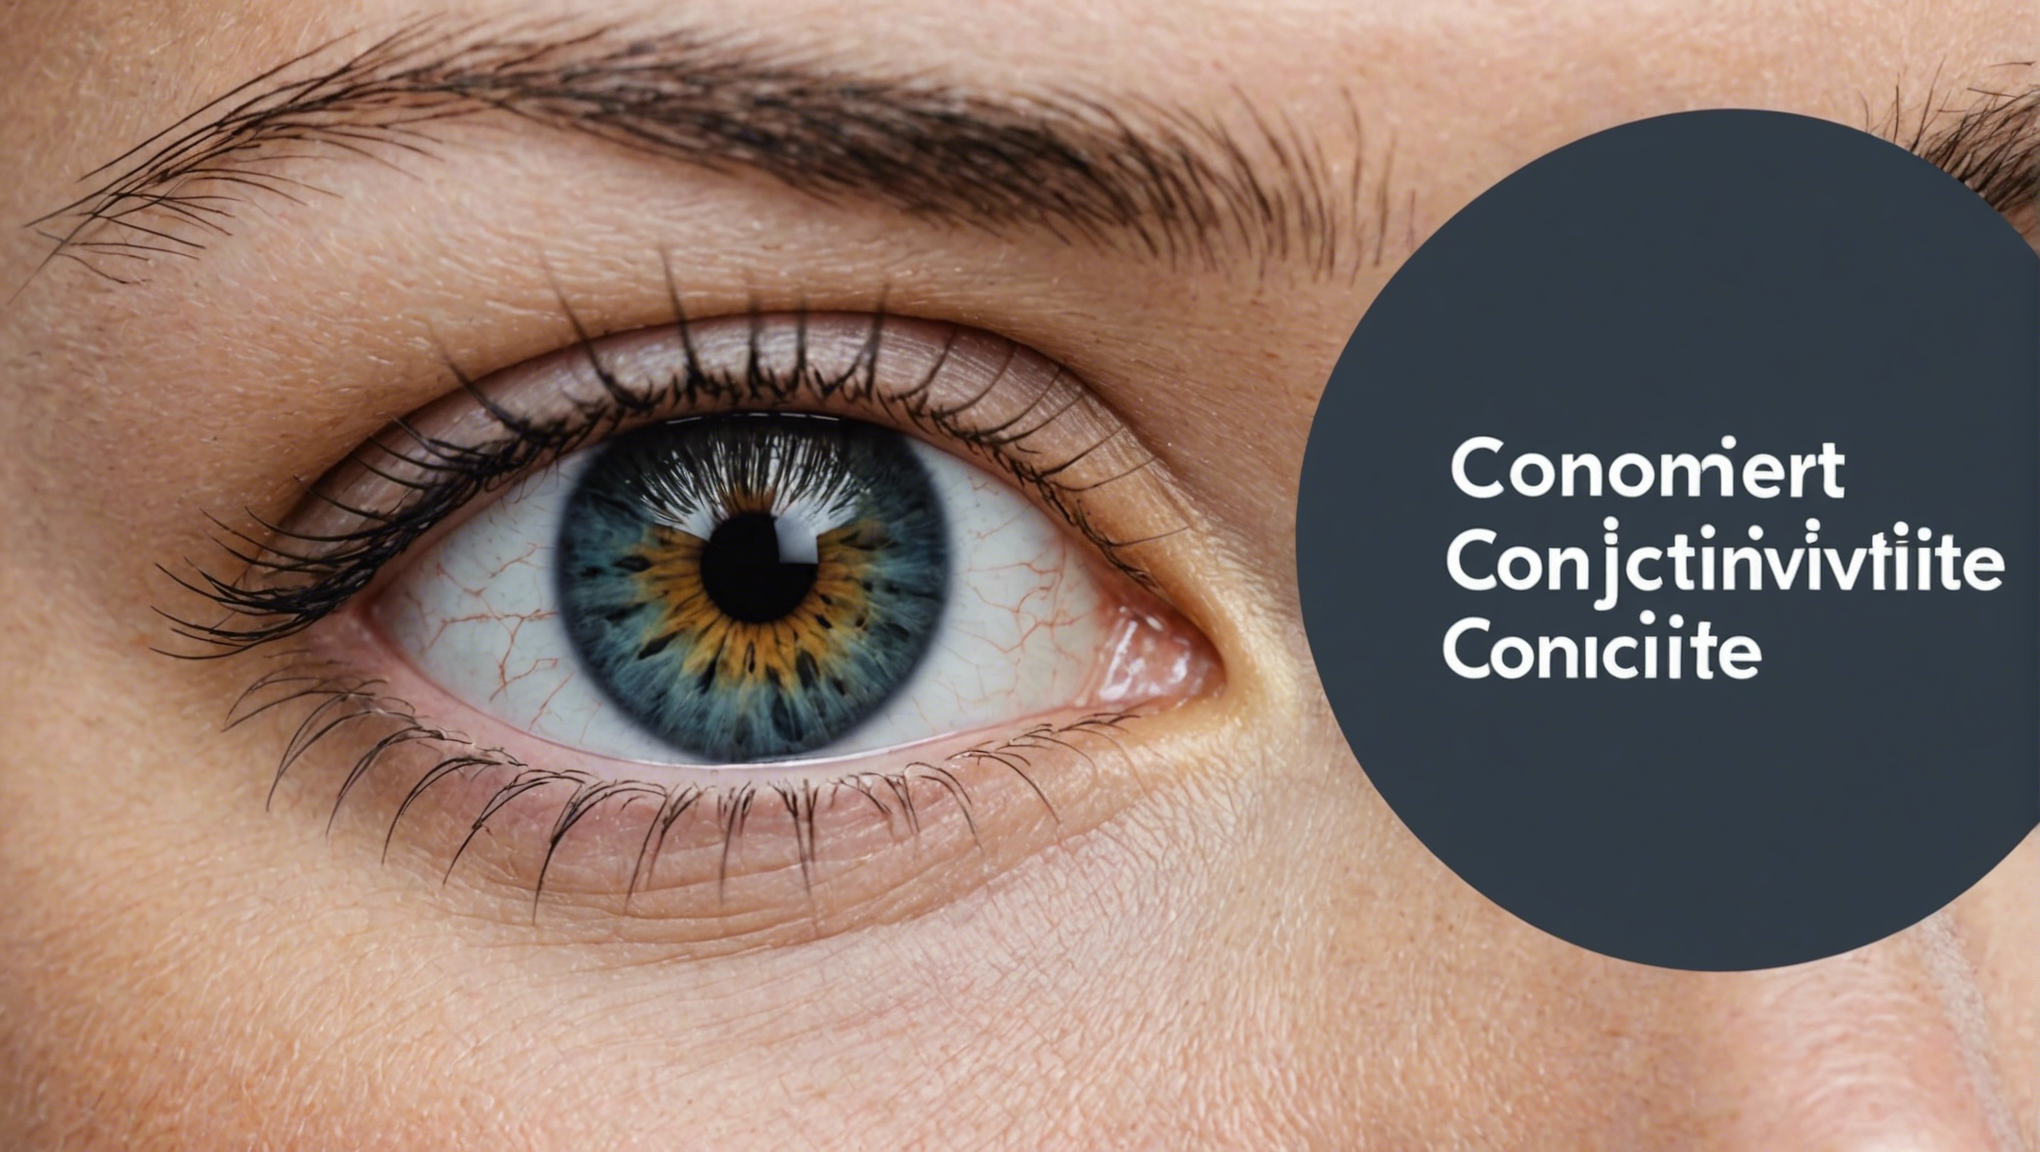 découvrez des conseils pratiques pour se prémunir efficacement contre la conjonctivite et protéger vos yeux au quotidien.